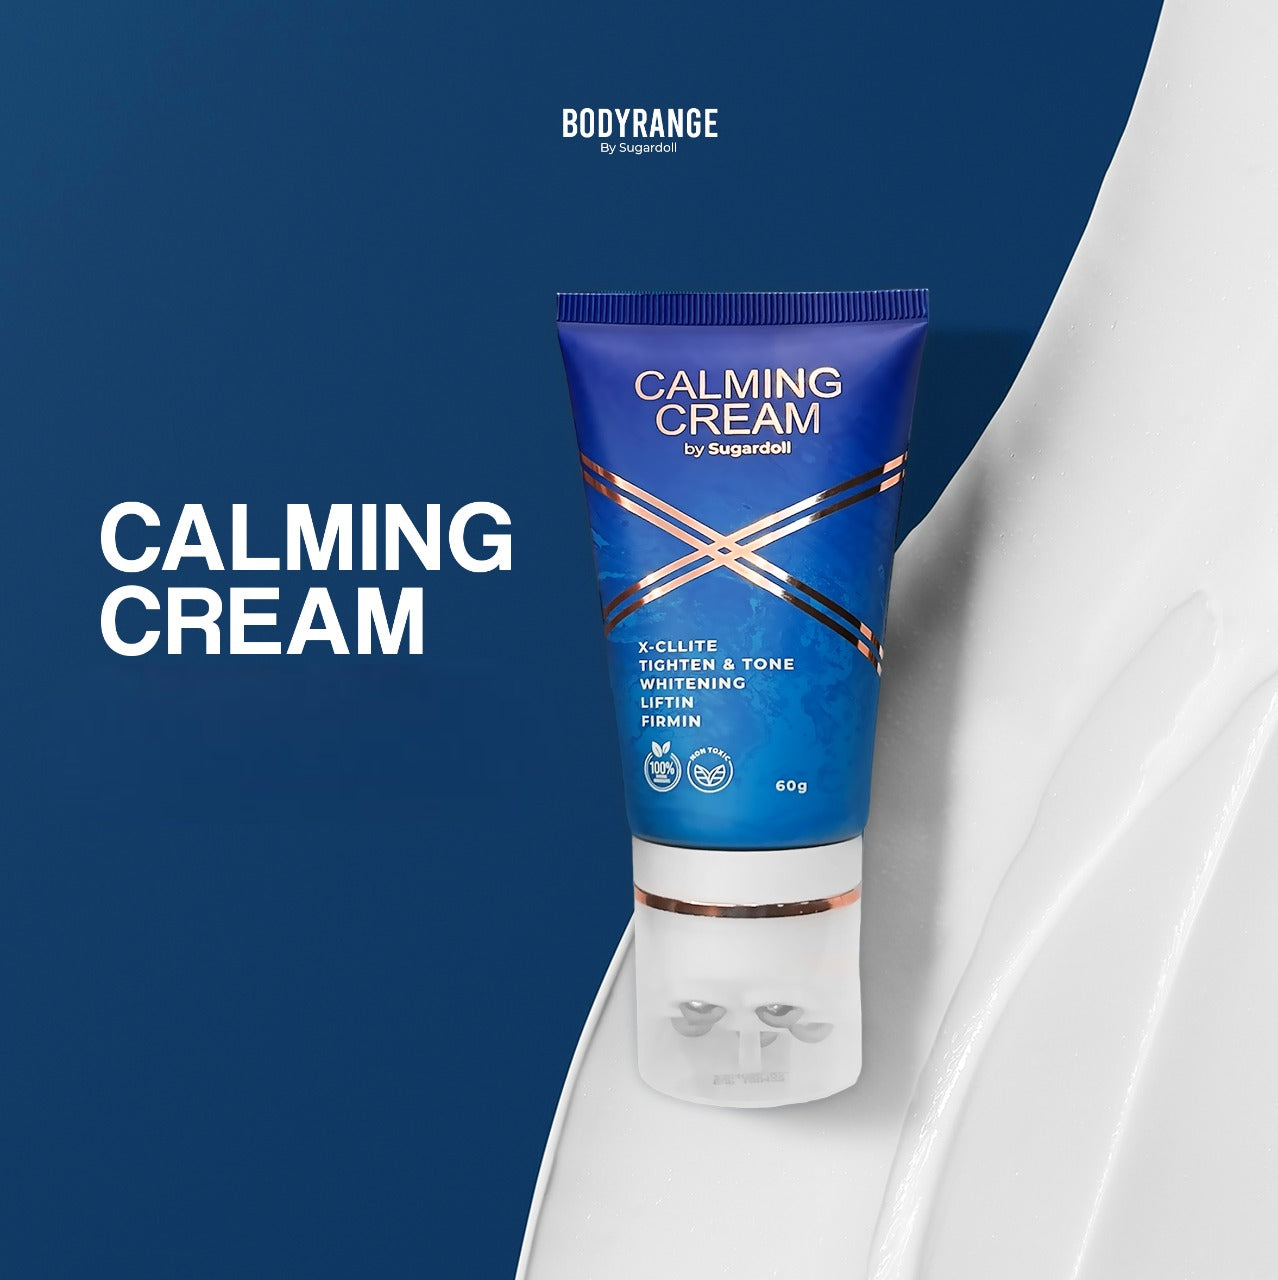 Calming Cream